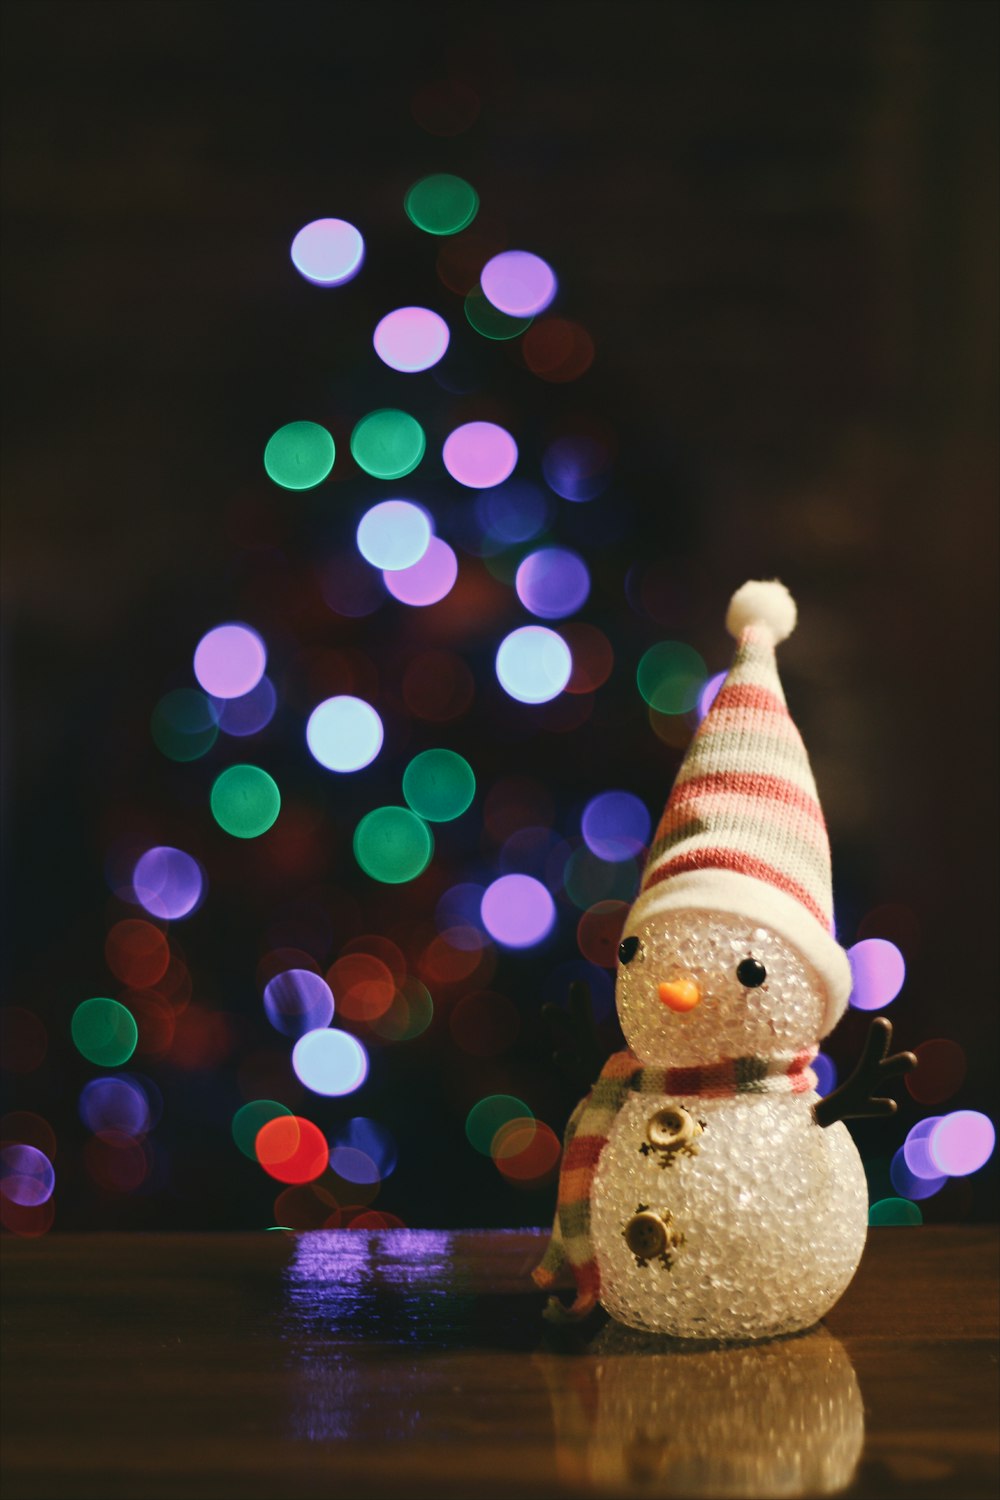 Una pequeña figura de muñeco de nieve sentada en el suelo frente a un árbol de Navidad.